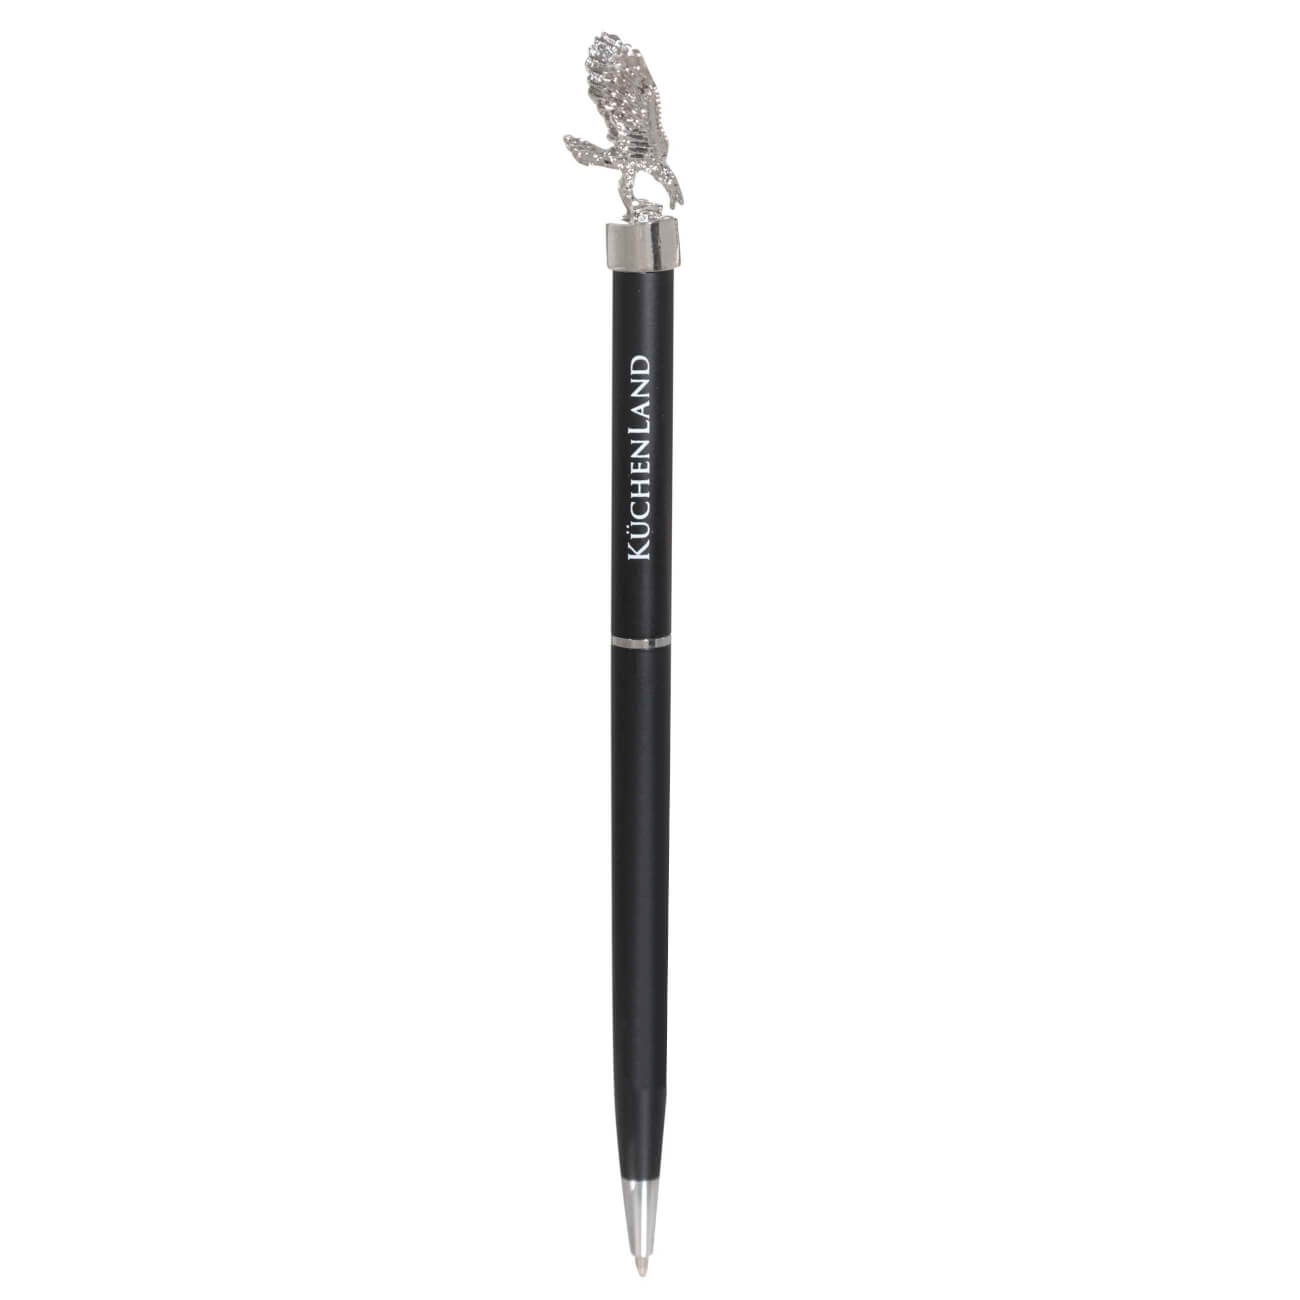 Ручка шариковая, 15 см, с фигуркой, сталь, черная, Орел, Draw figure factory brass ручка роллерная